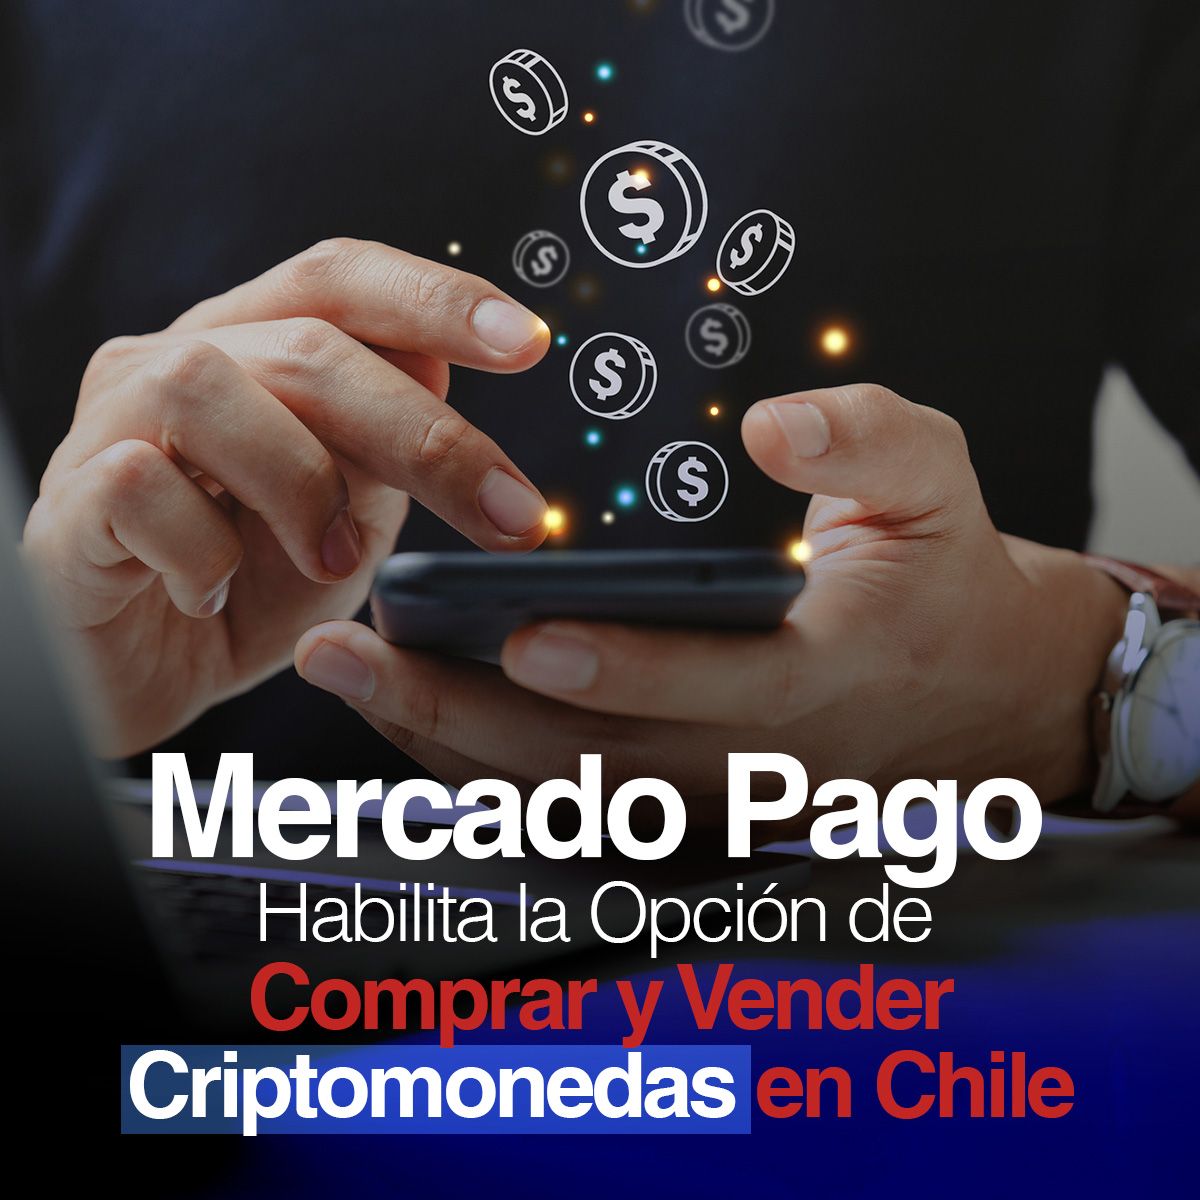 Mercado Pago Habilita la Opción de Comprar y Vender Criptomonedas en Chile